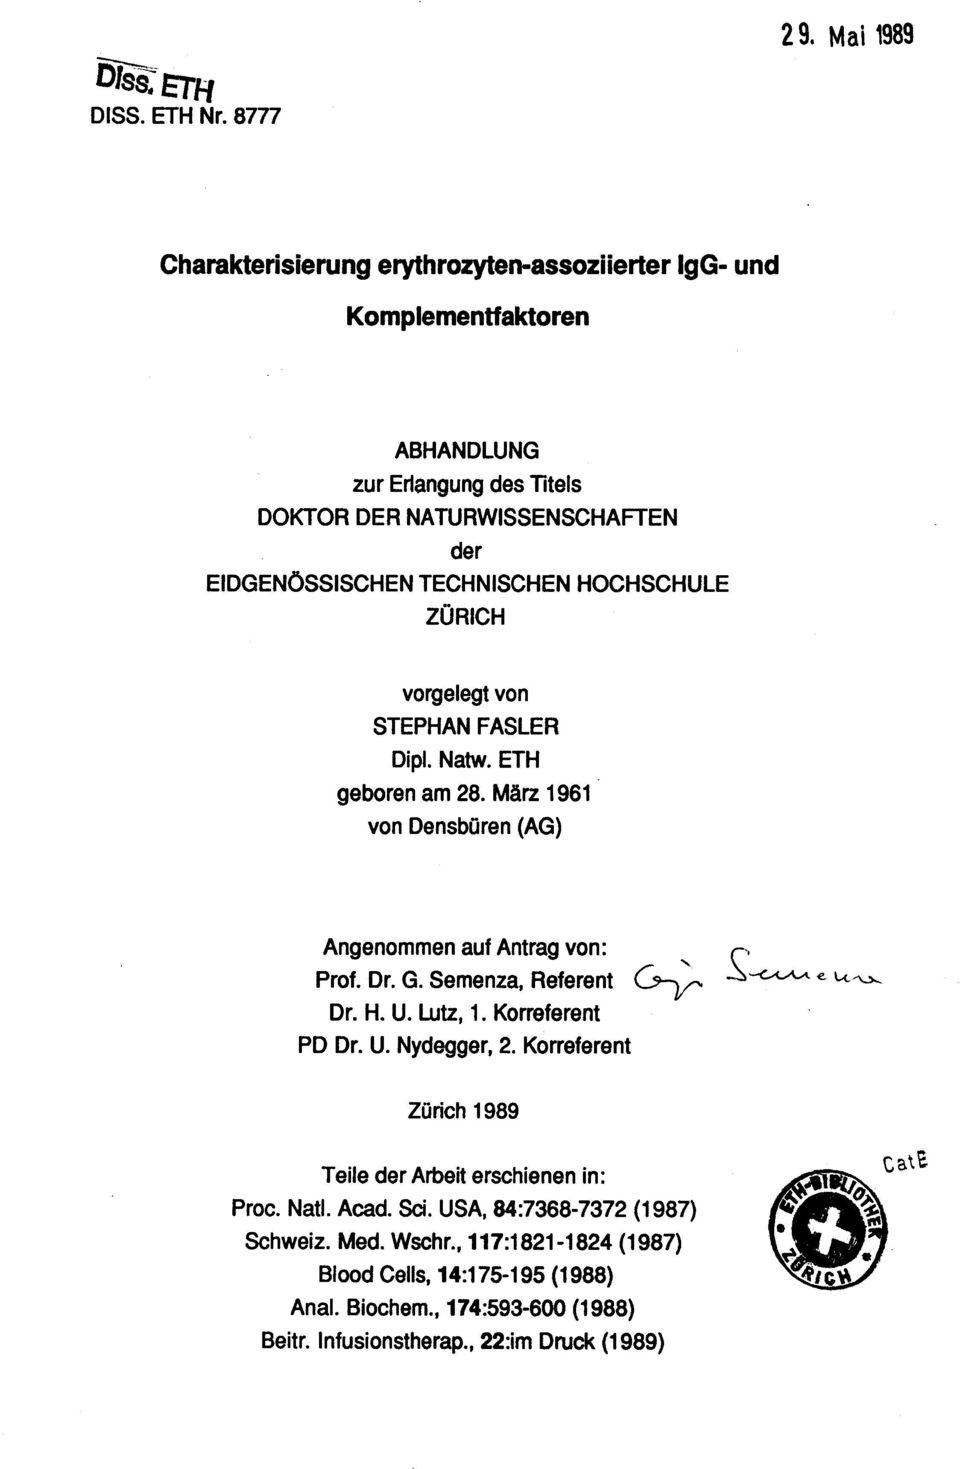 TECHNISCHEN HOCHSCHULE ZÜRICH vorgelegt von STEPHAN FASLER Dipl. Natw. ETH geboren am 28. März 1961 von Densbüren (AG) Angenommen auf Antrag von: Prof. Dr. G.